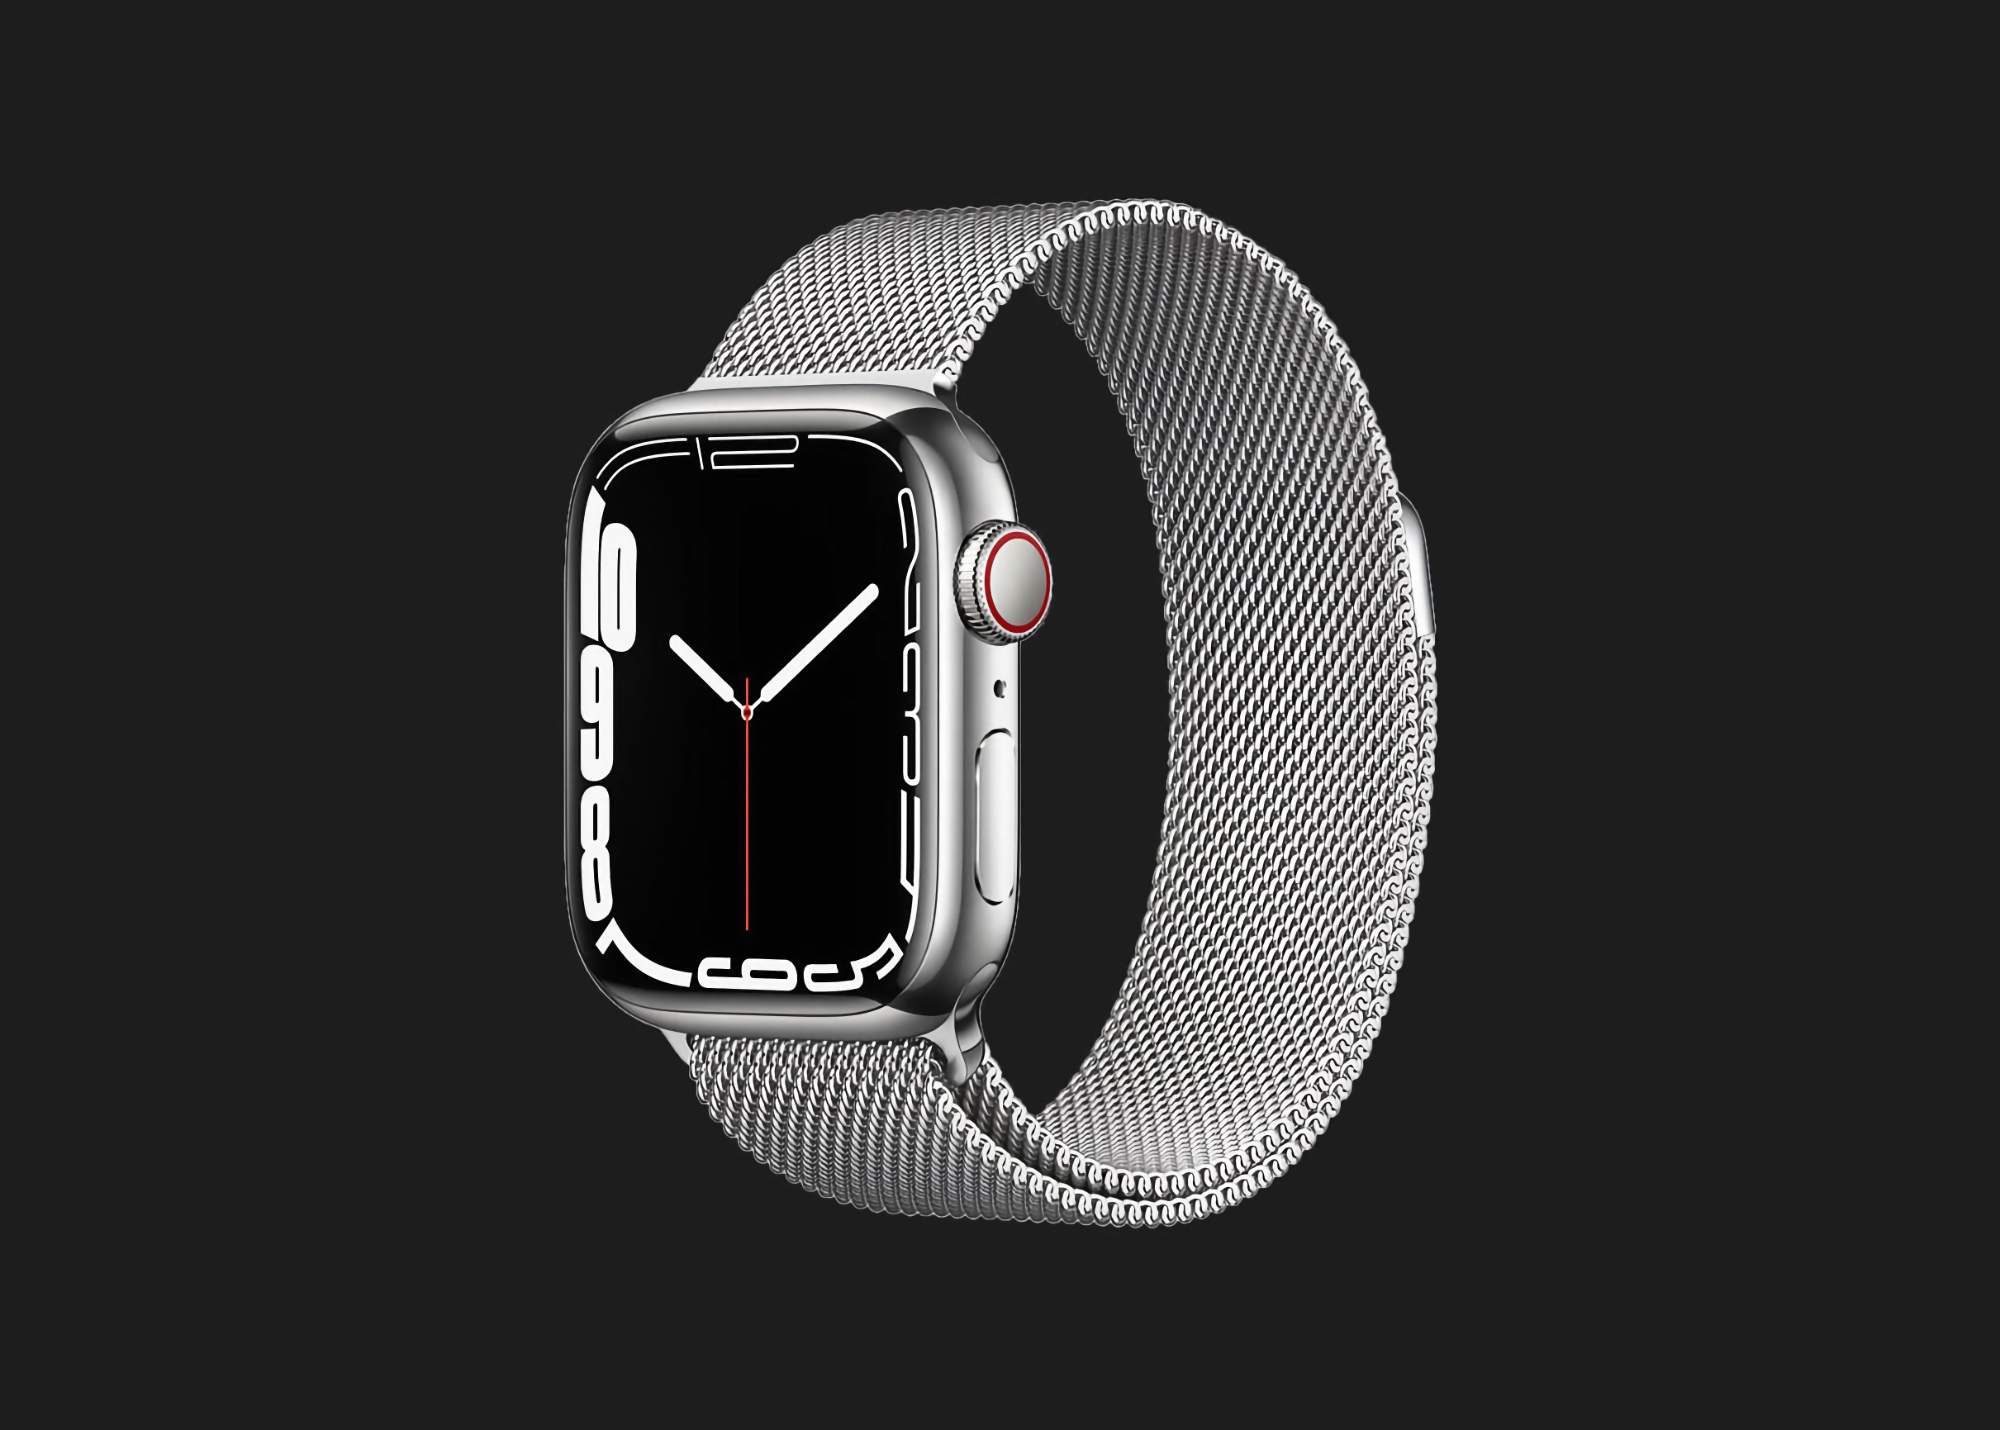 Oferta por tiempo limitado: Apple Watch Series 7 con soporte móvil y caja de acero inoxidable disponible en Amazon con un descuento de 78€.